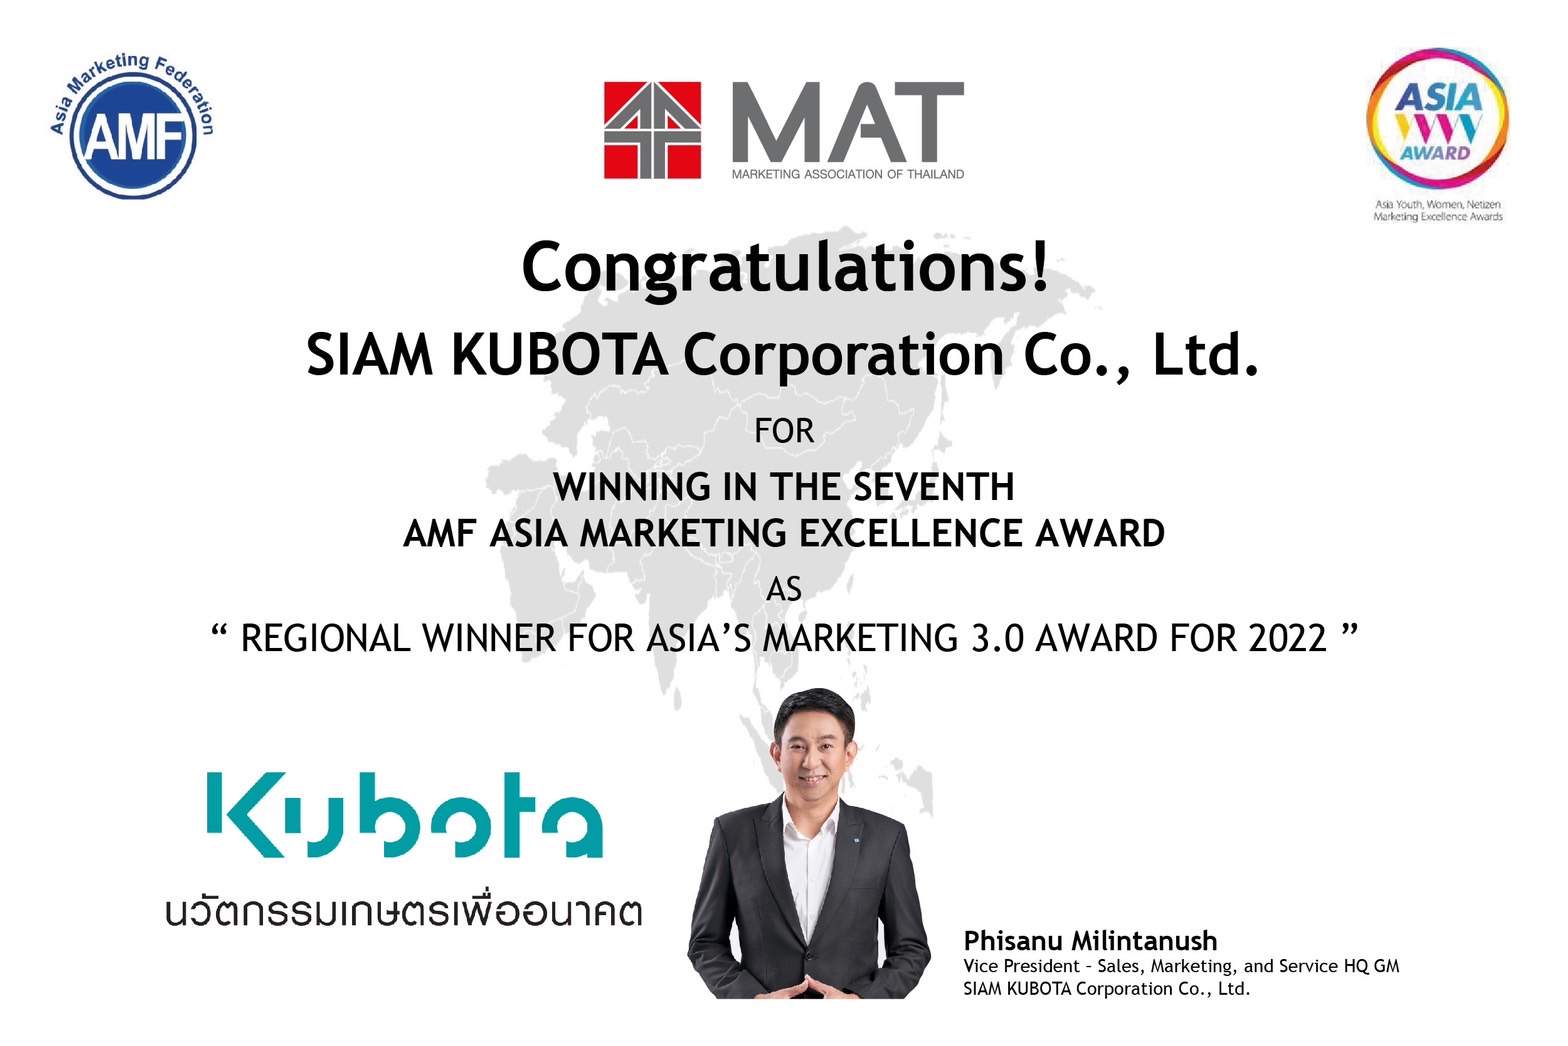 สยามคูโบต้า คว้ารางวัลชนะเลิศ ASIA MARKETING EXCELLENCE AWARDS 2022 ประเภทการตลาด 3.0 (Marketing 3.0)